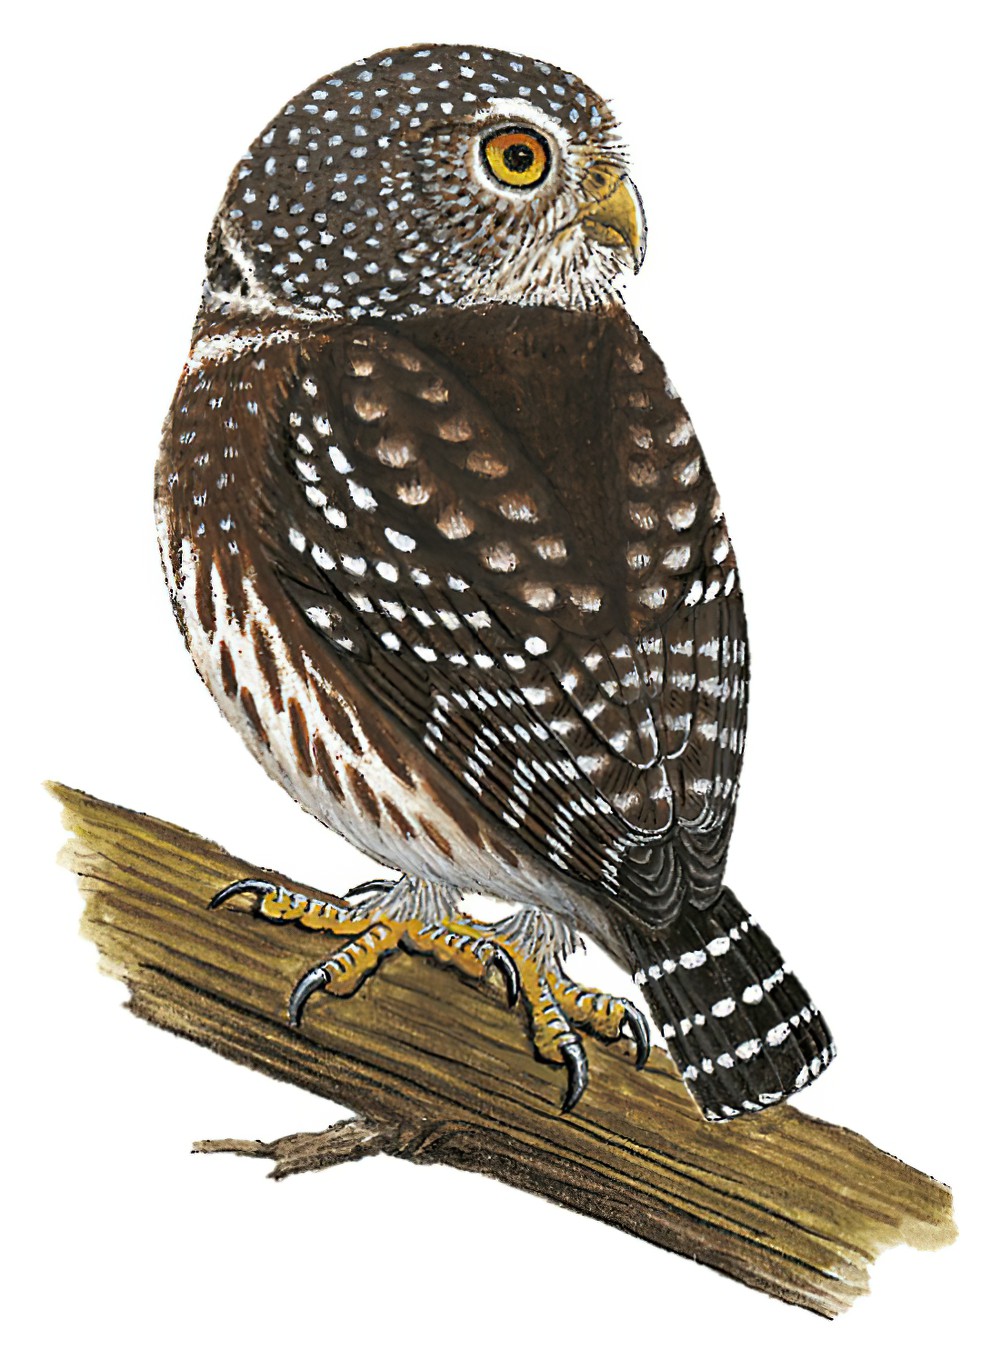 派克鸺鹠 / Subtropical Pygmy Owl / Glaucidium parkeri